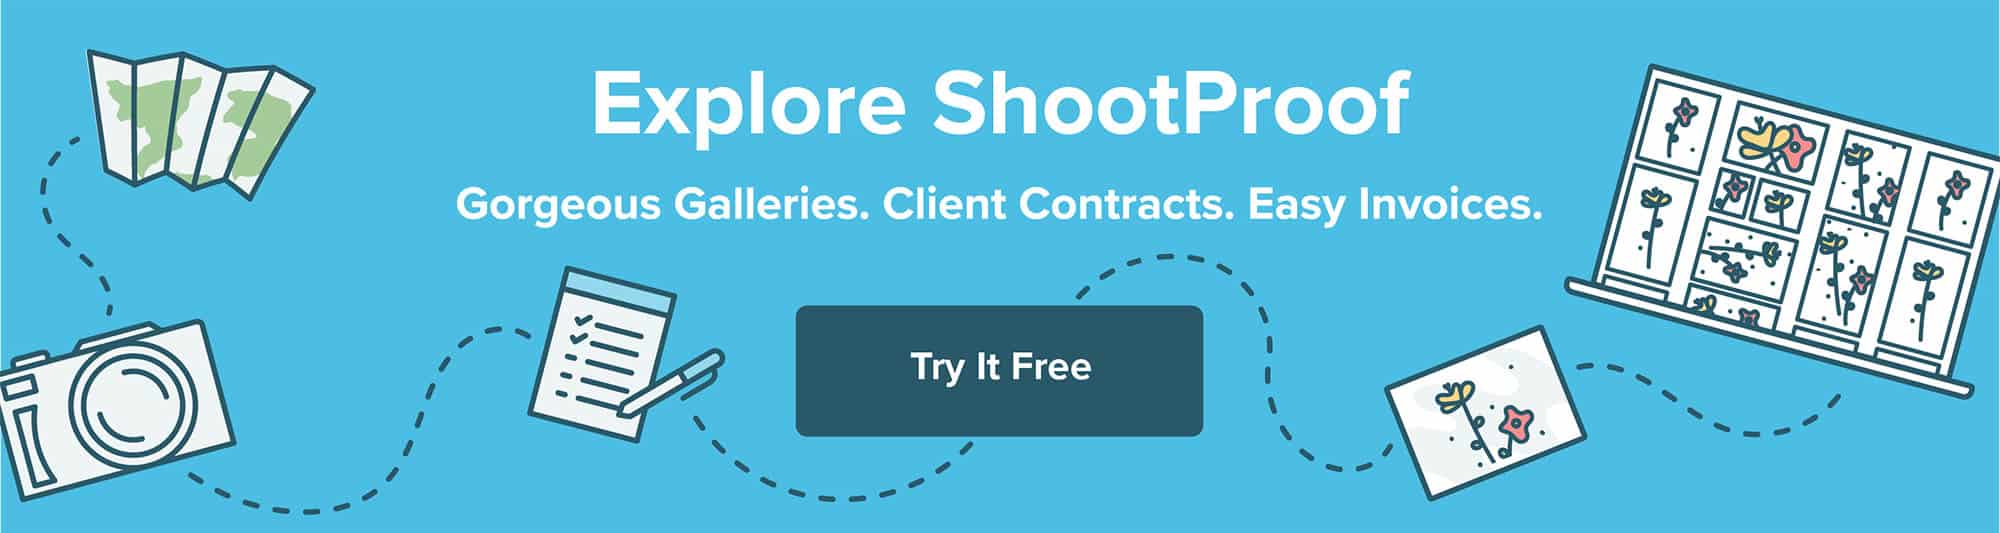 try shootproof FREE